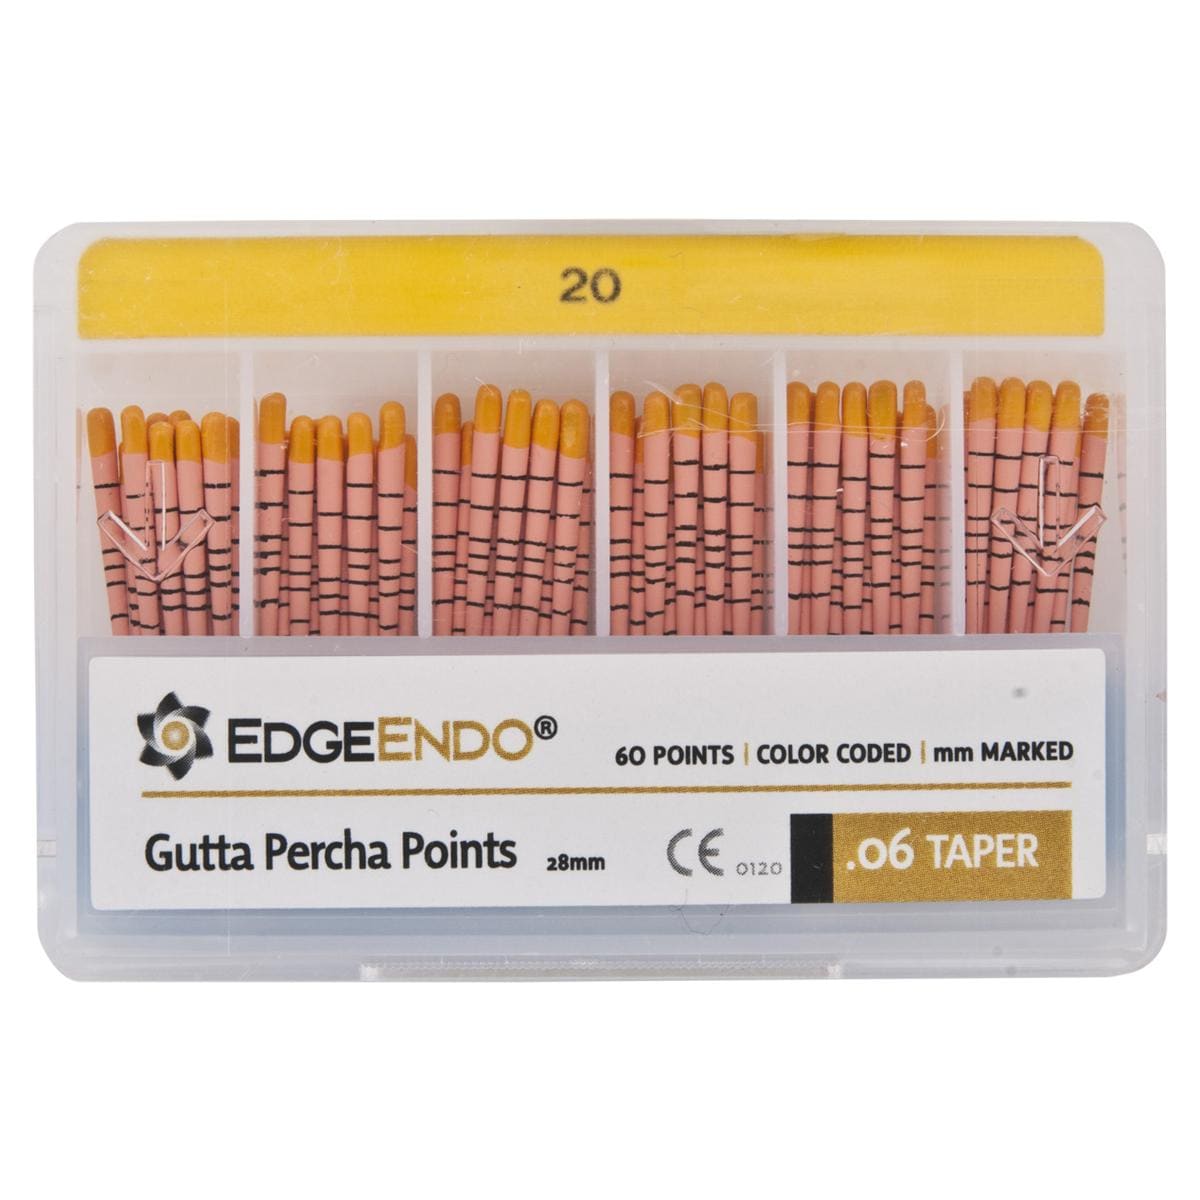 EdgeFile X7 Guttaperchaspitzen - Taper 06, ISO 020, gelb, Packung 60 Stück